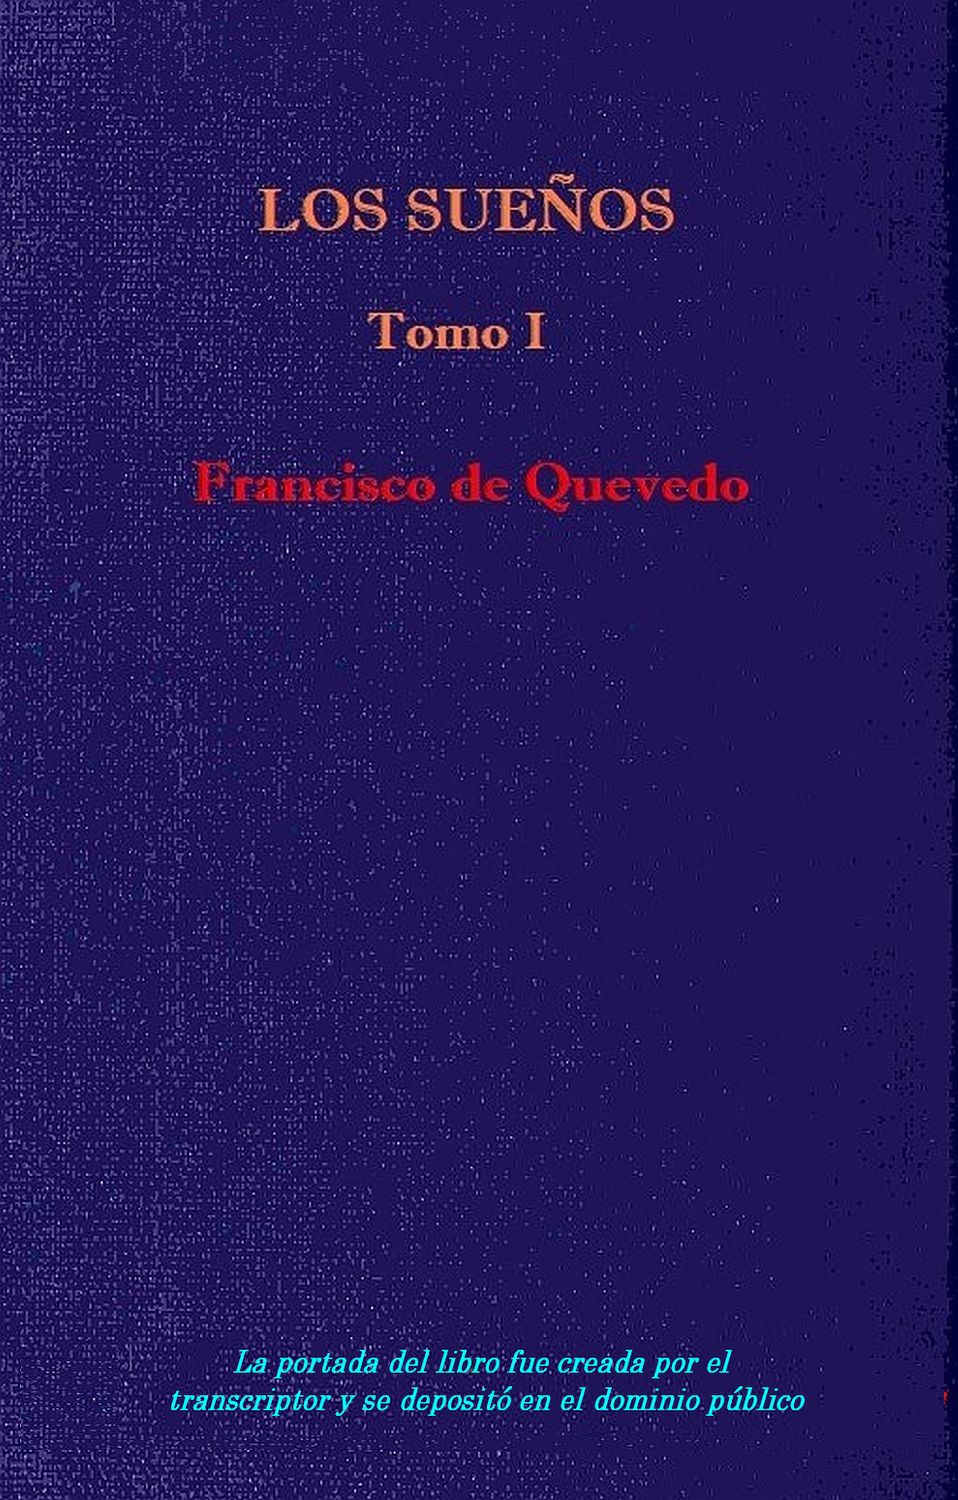 Subir sentar nosotros Los sueños - Vol. 1, by Quevedo—A Project Gutenberg eBook